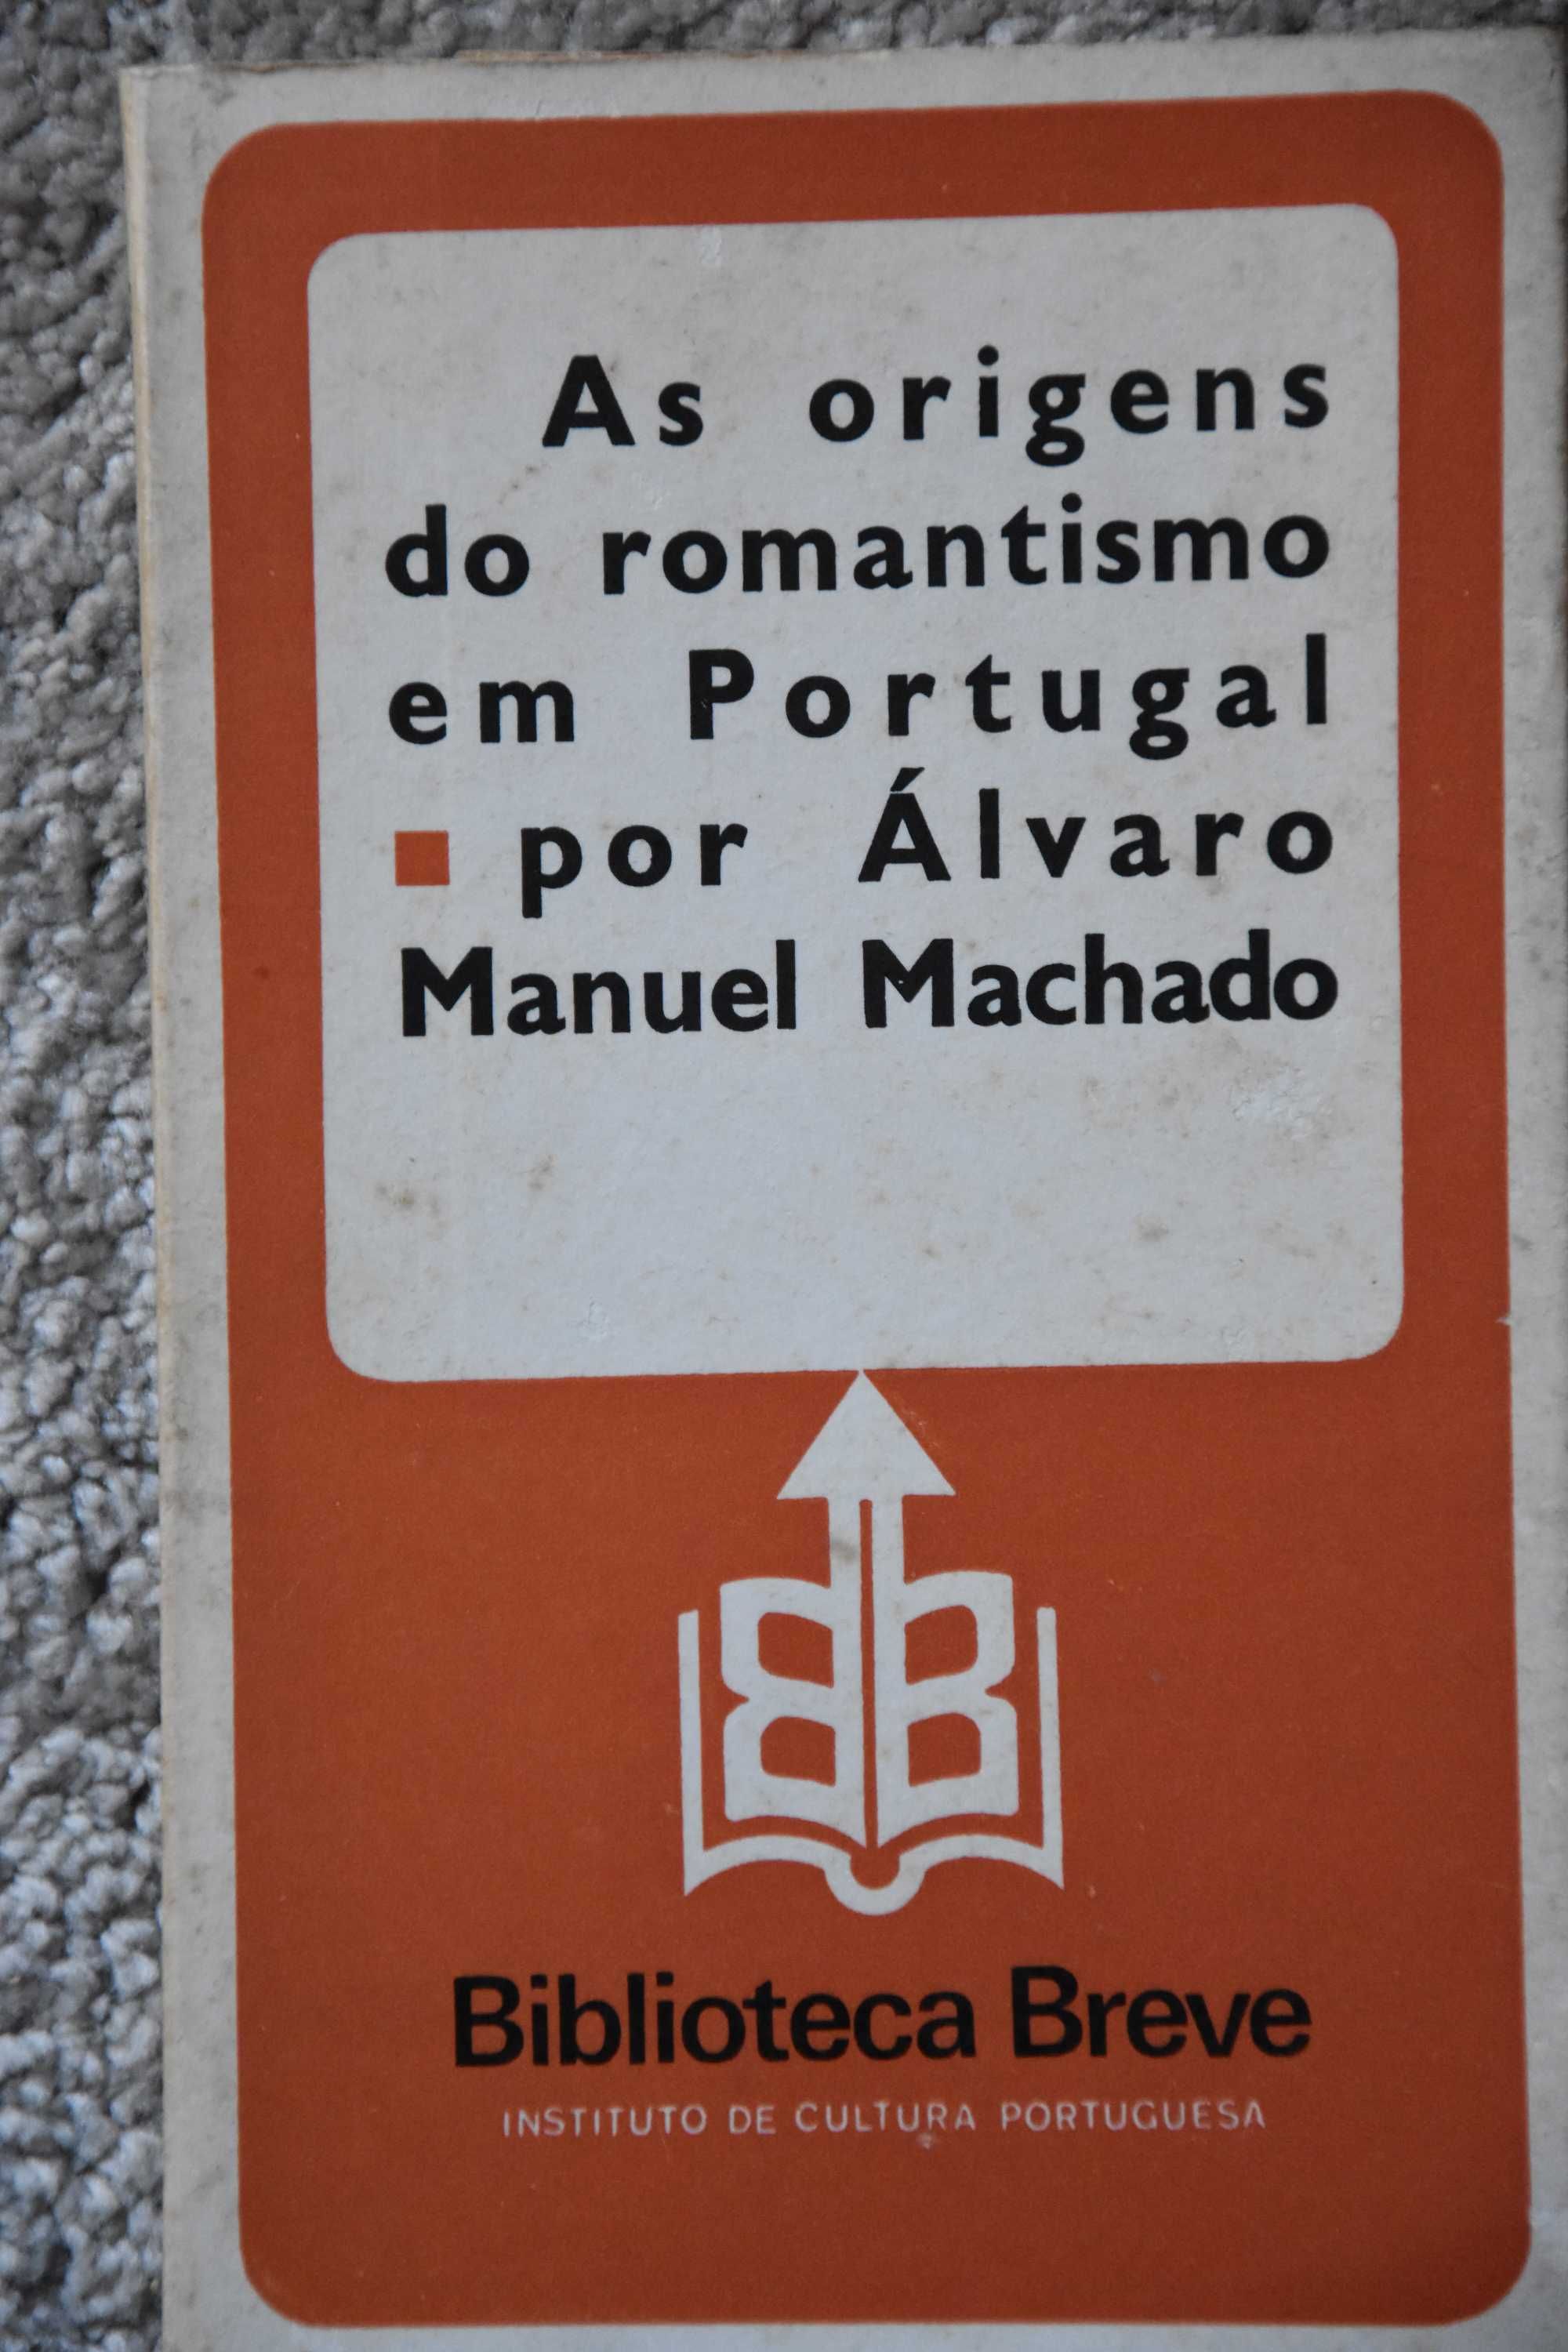 As origens do romantismo em Portugal, Álvaro Manuel Machado